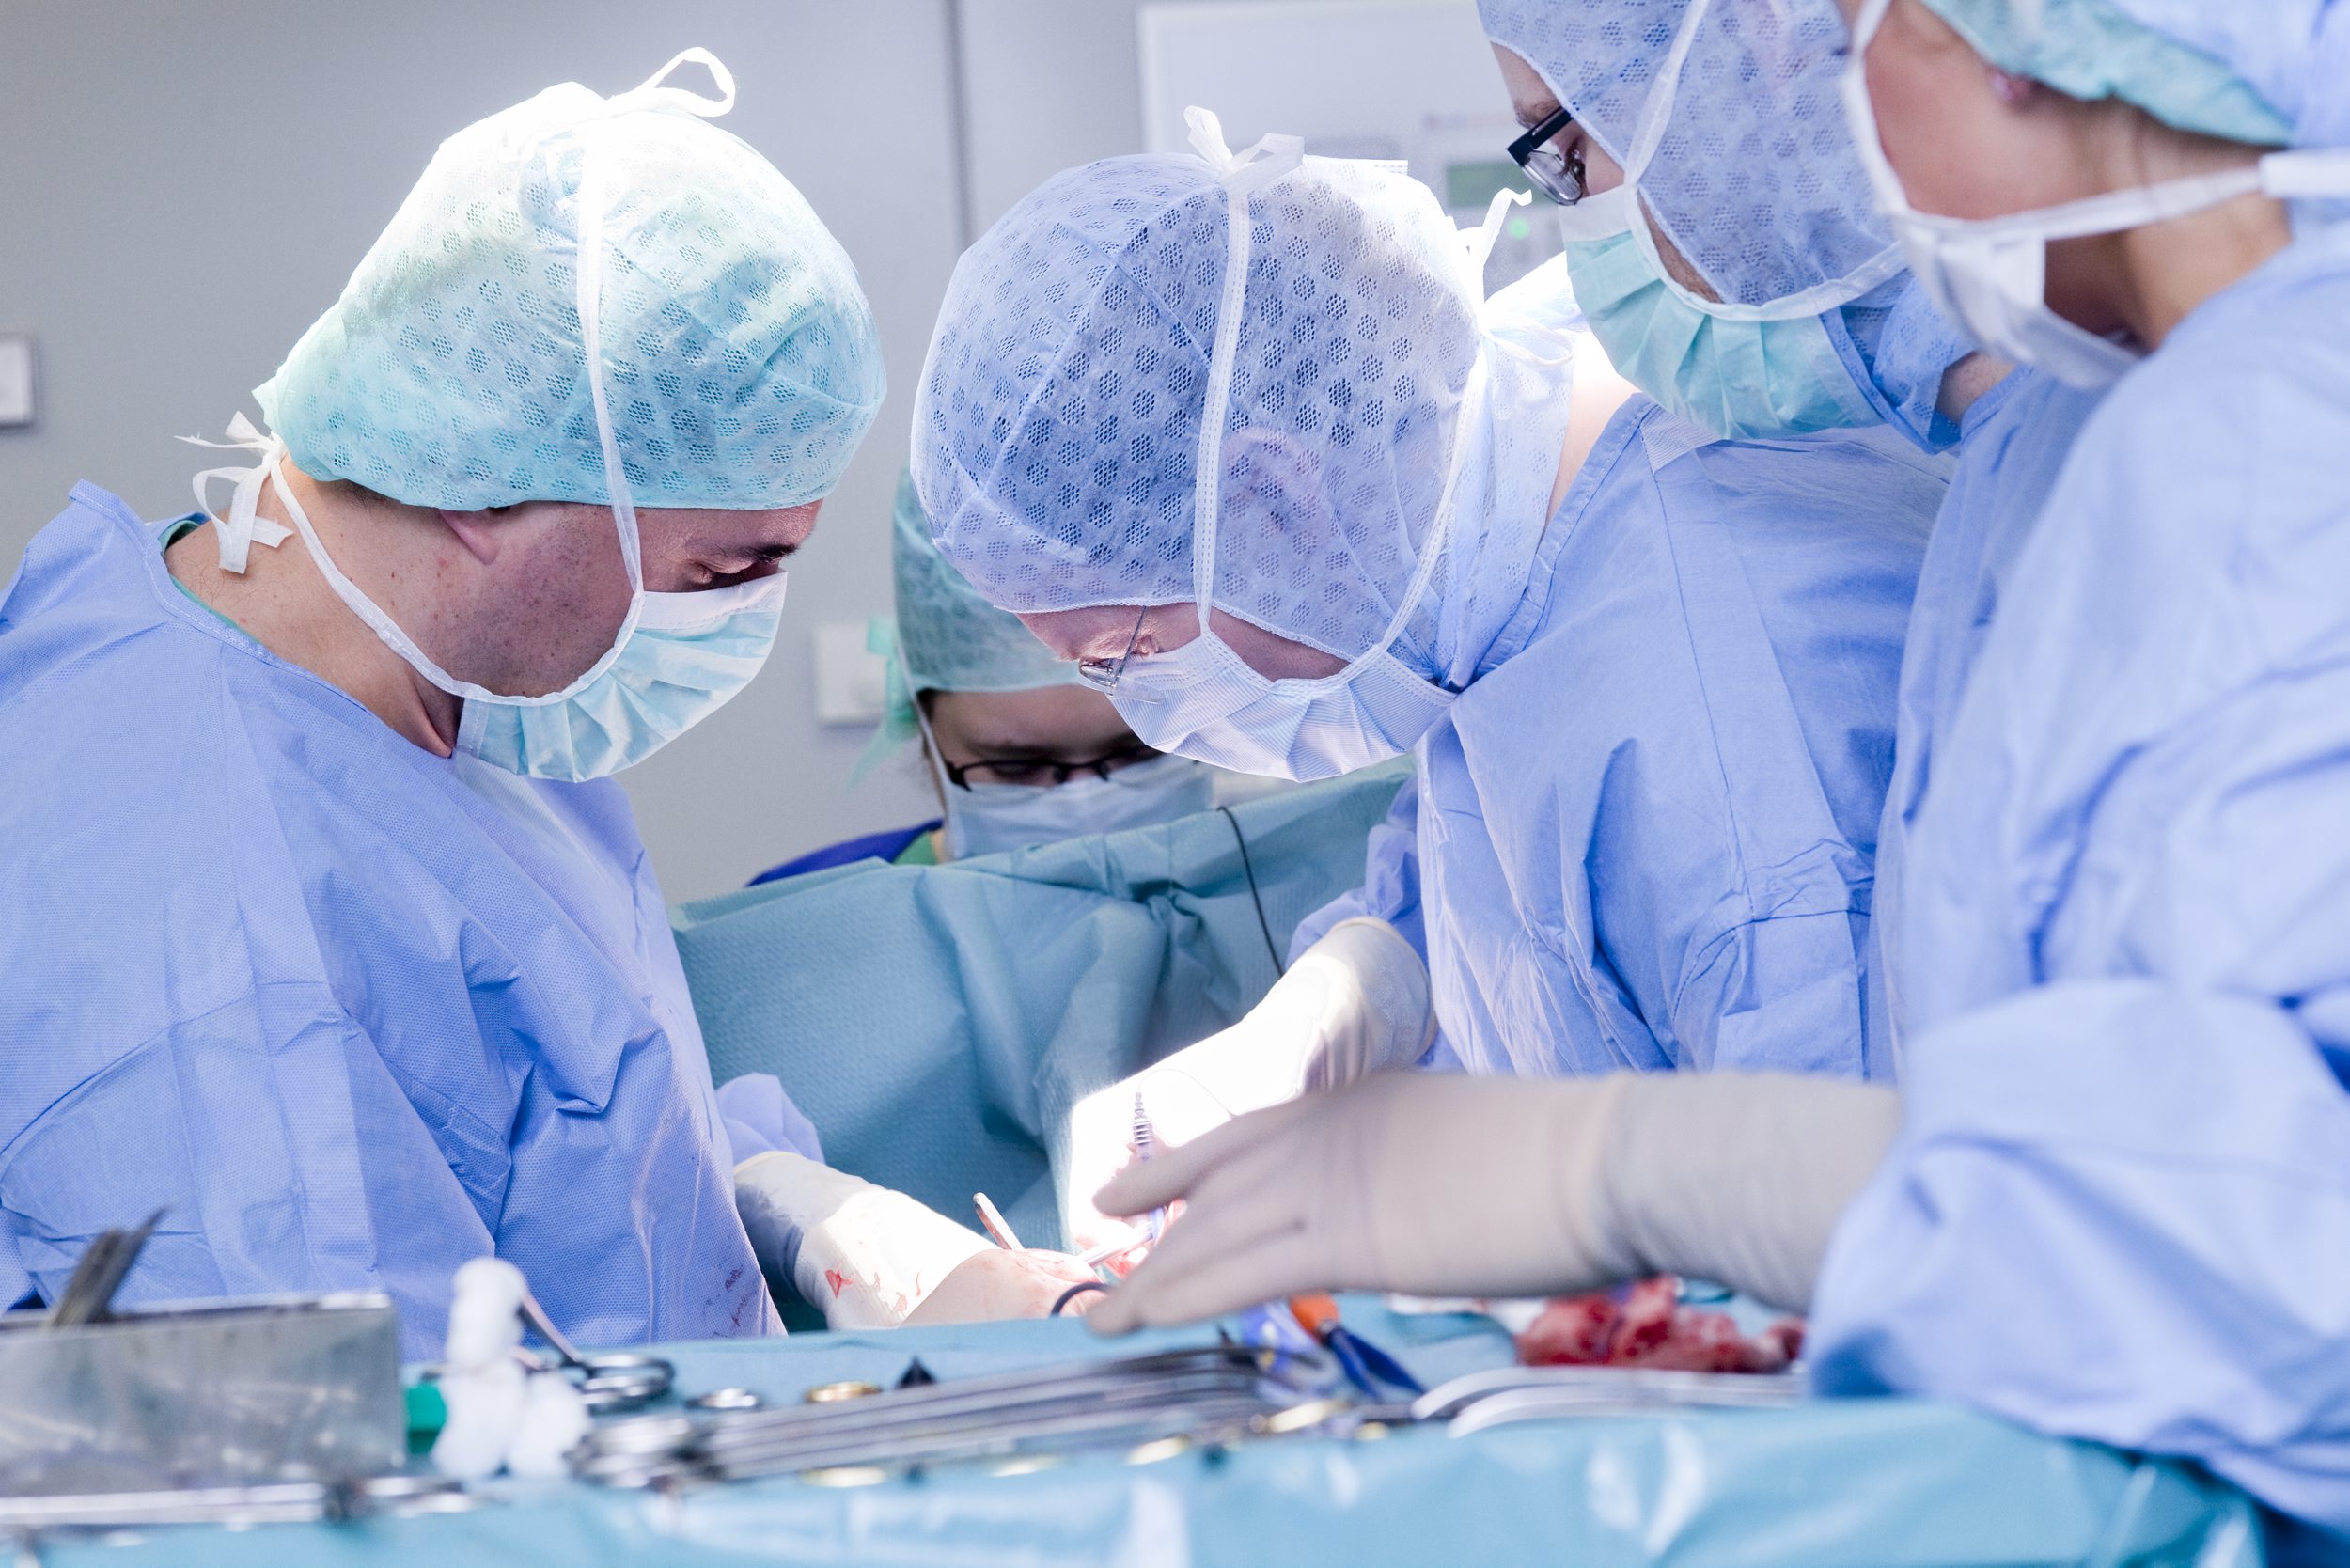 Personen im OP-Mantel bei einem operativen Eingriff